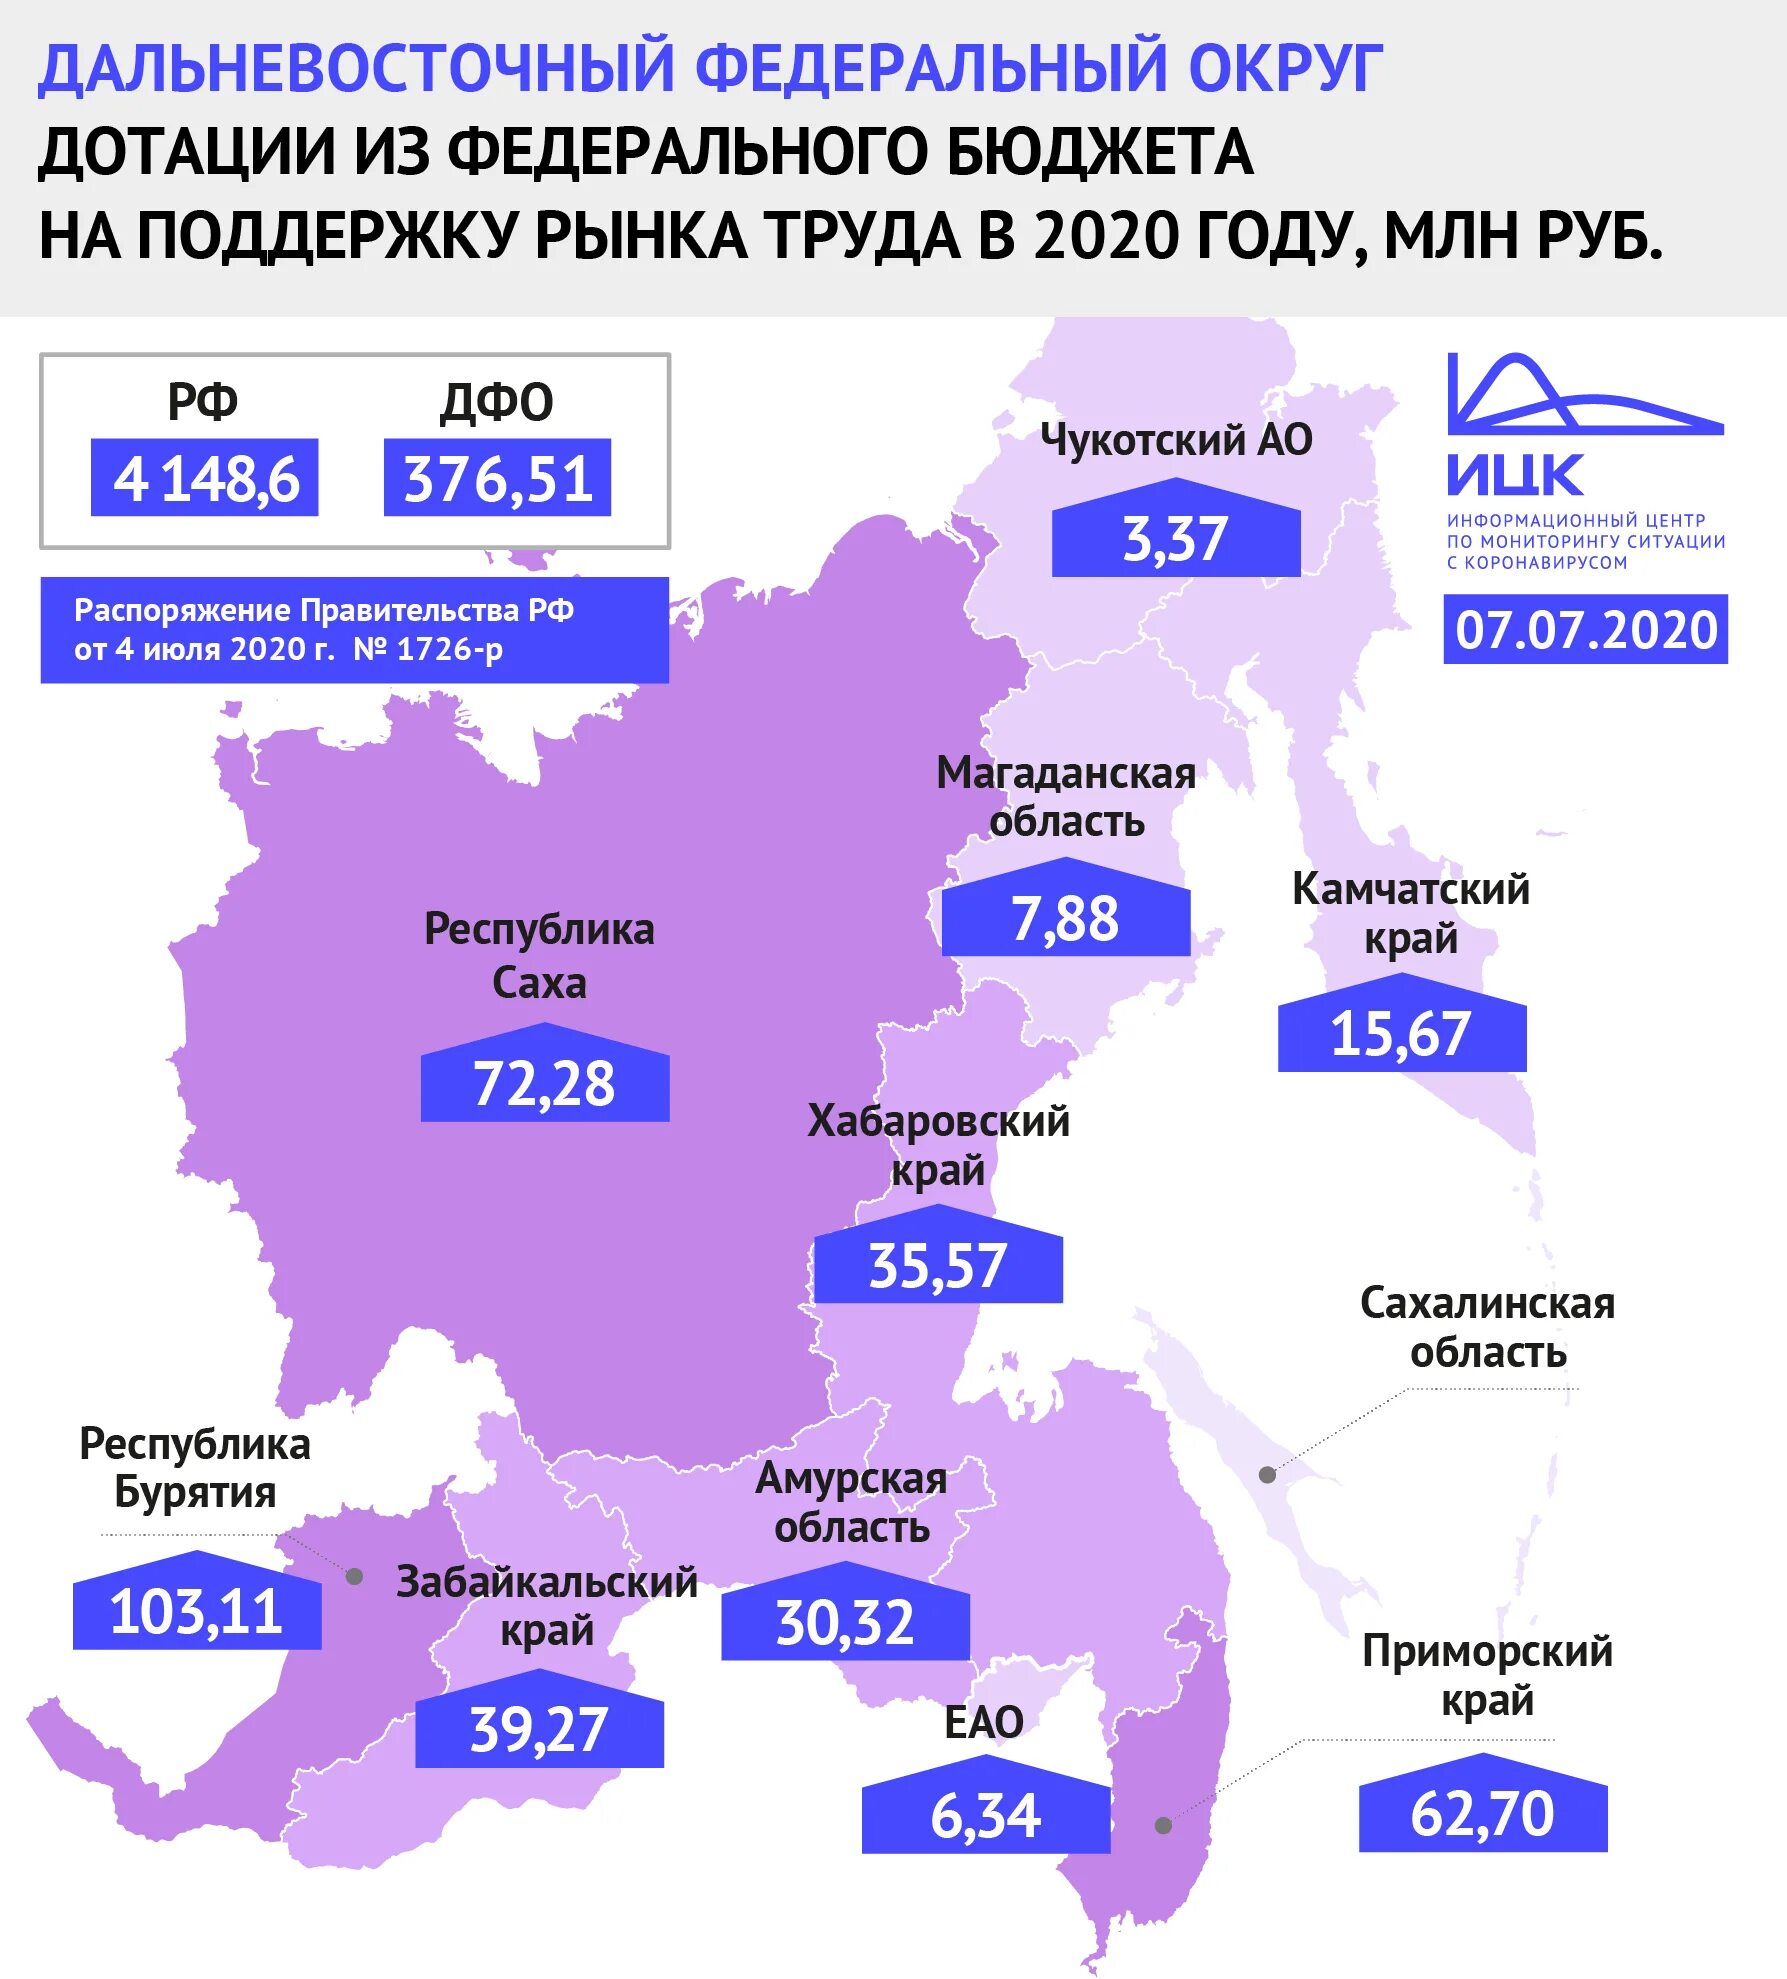 Дотации в бюджете РФ В 2020. 2020 Год рынок труда. Дотации по регионам РФ. Бюджеты федеральных округов.